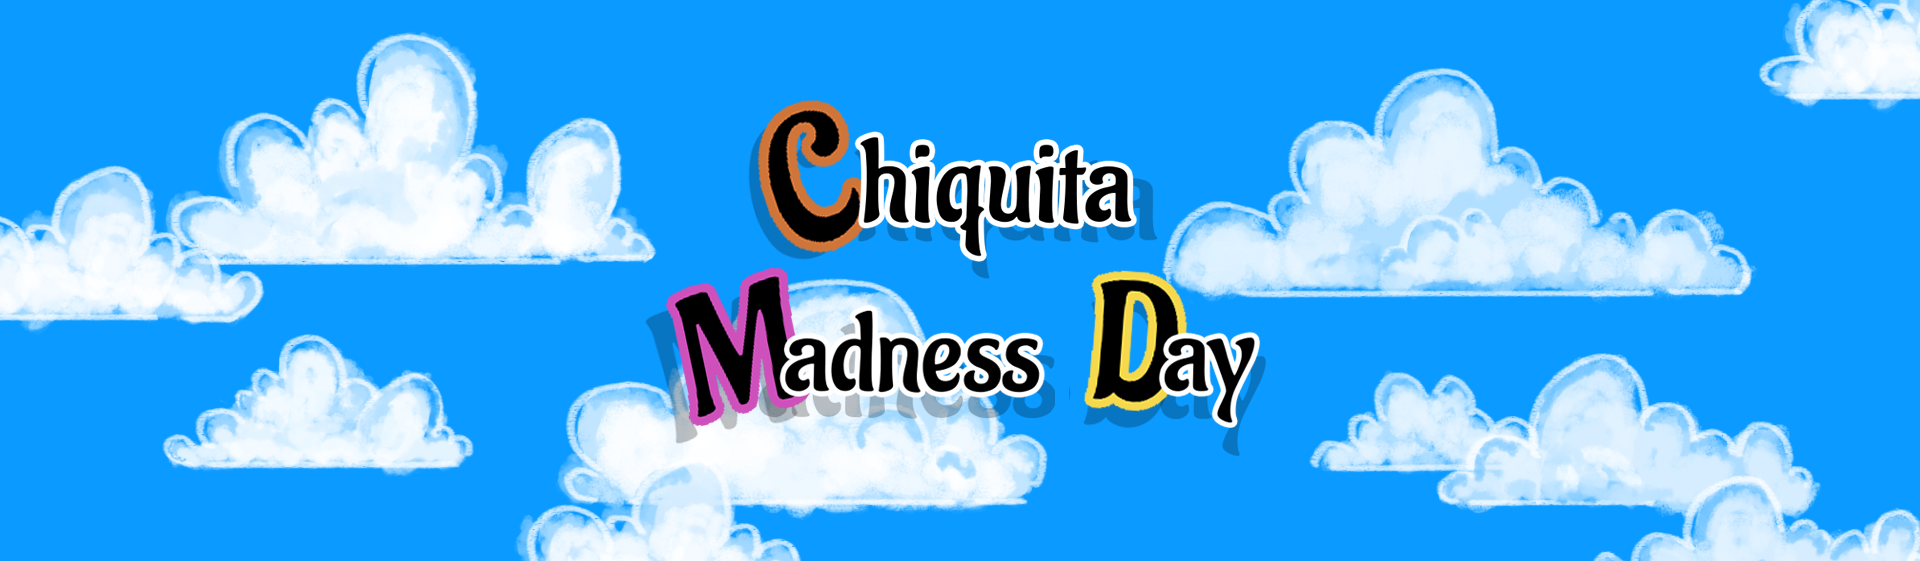 Chiquita Madness Day